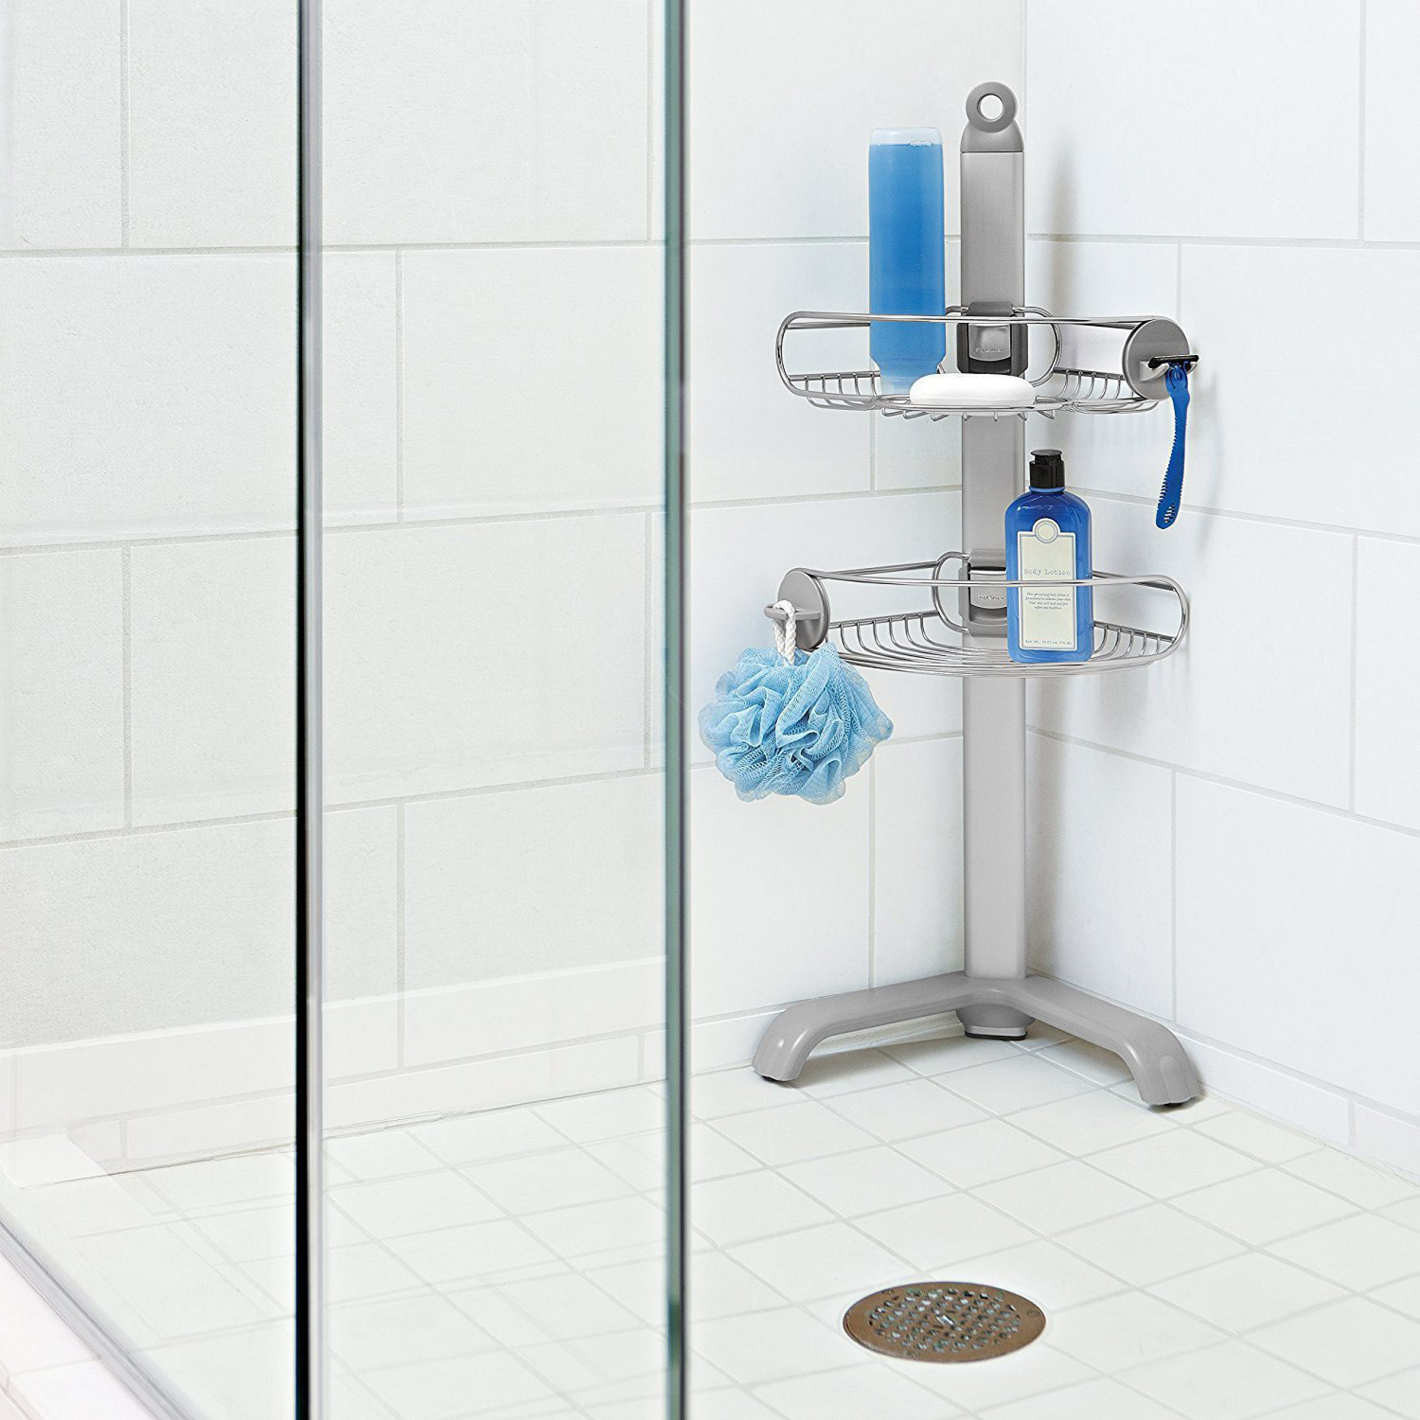 Bathroom Shower Caddy
 Best Shower Cad s Shower Organizers on Amazon